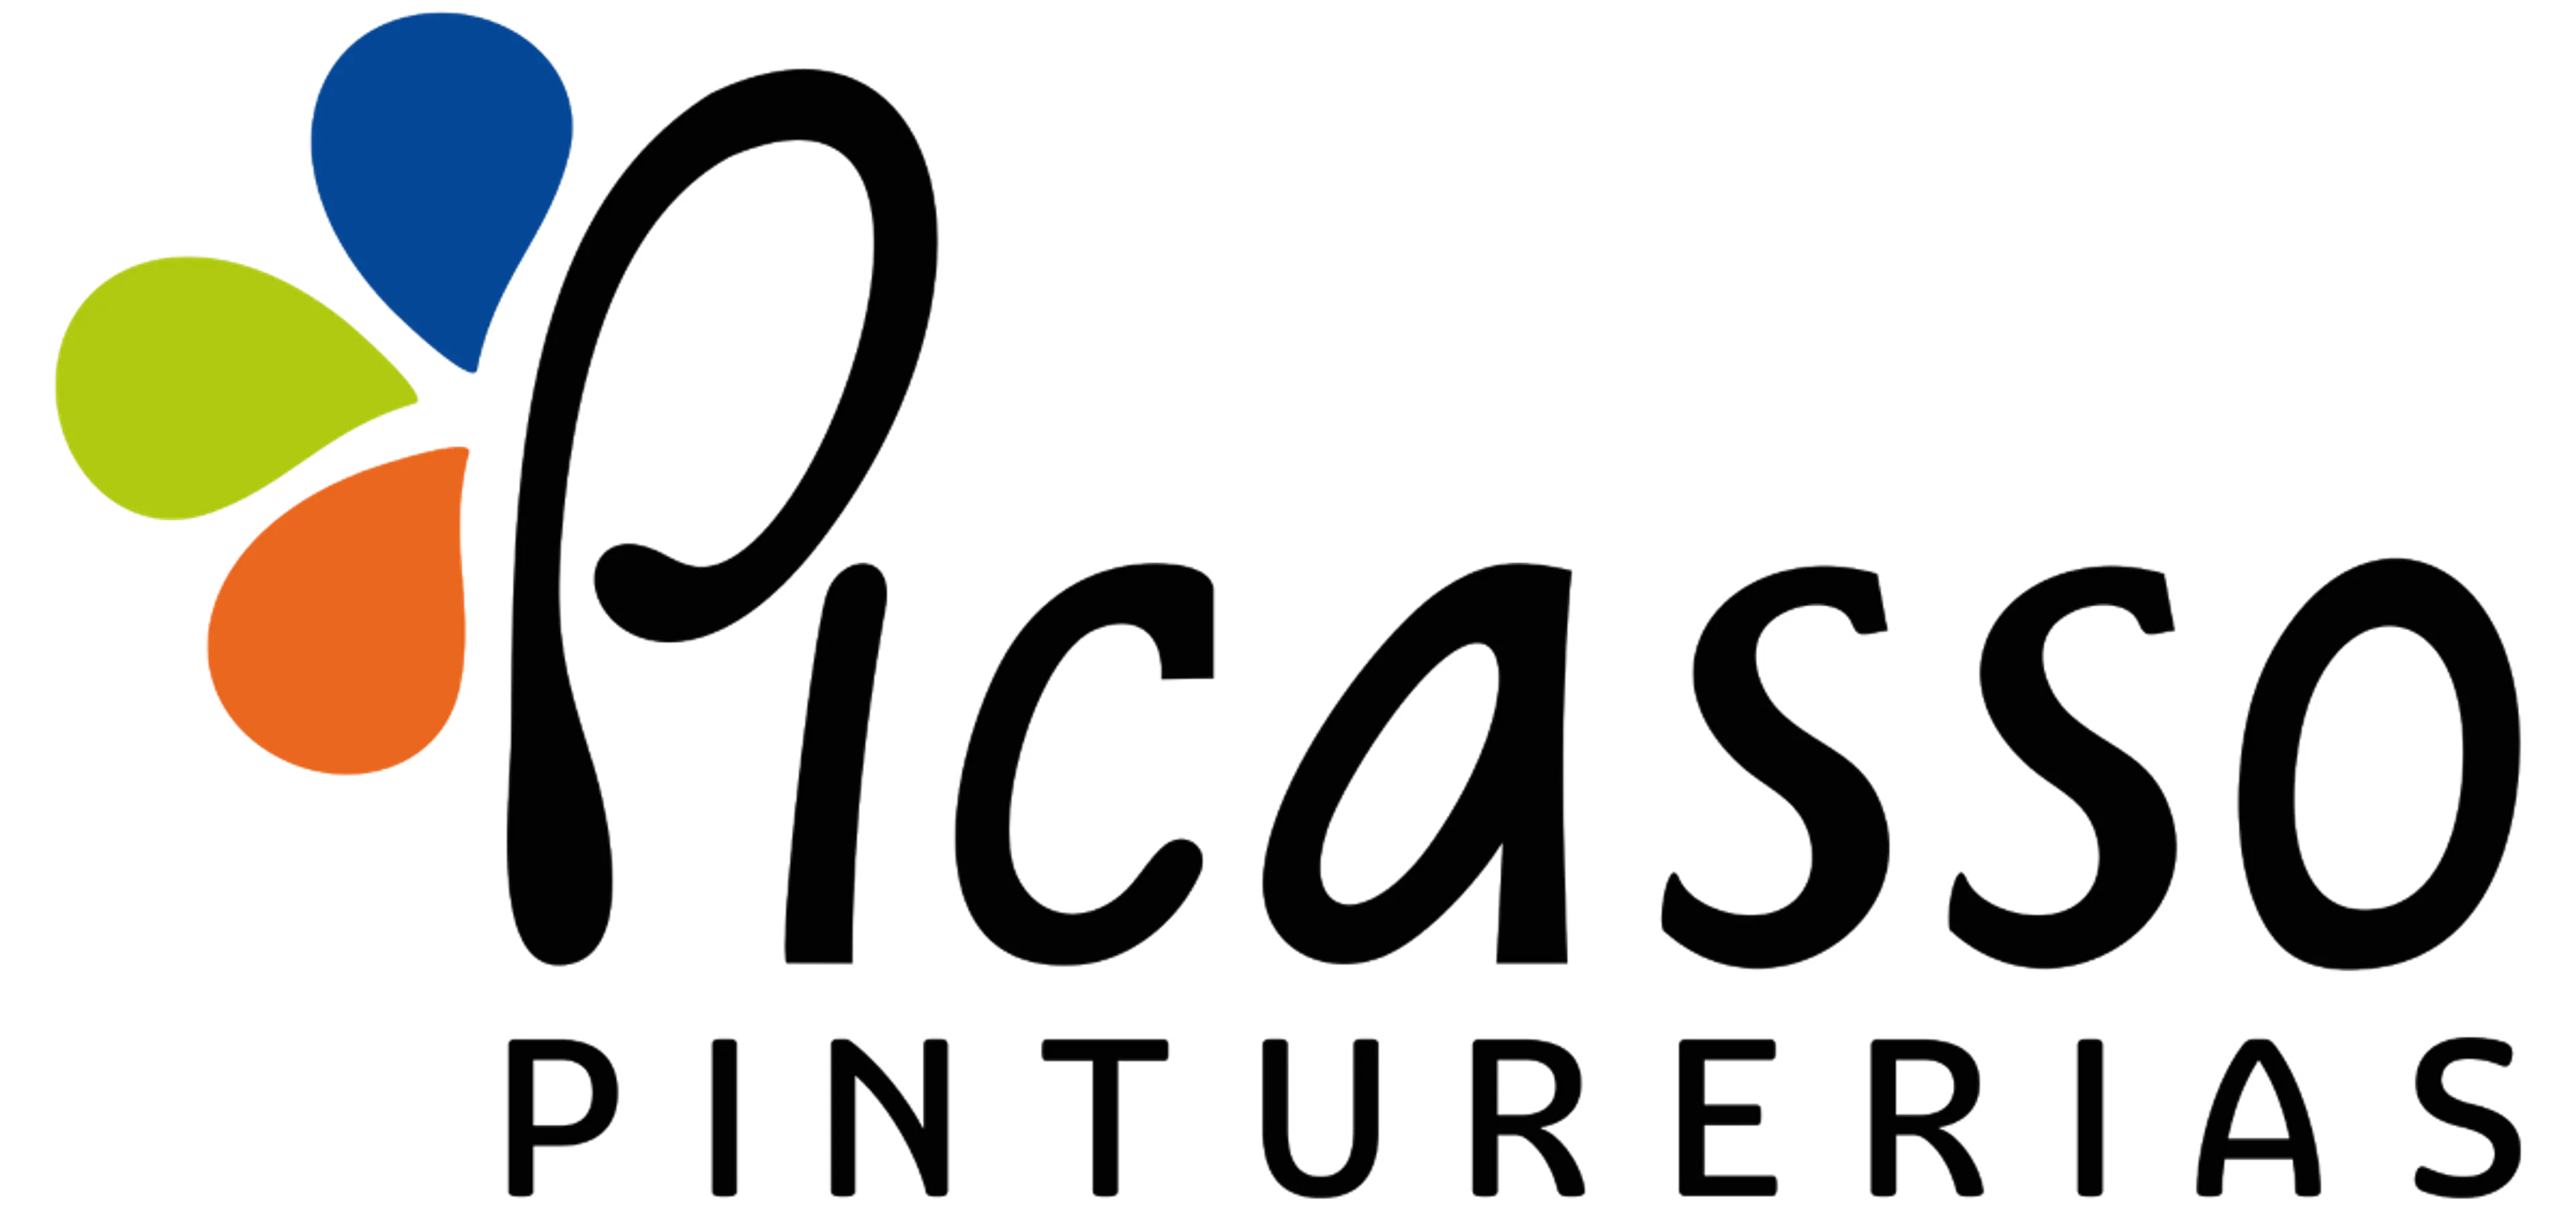 PINTURERIAS PICASSO logo